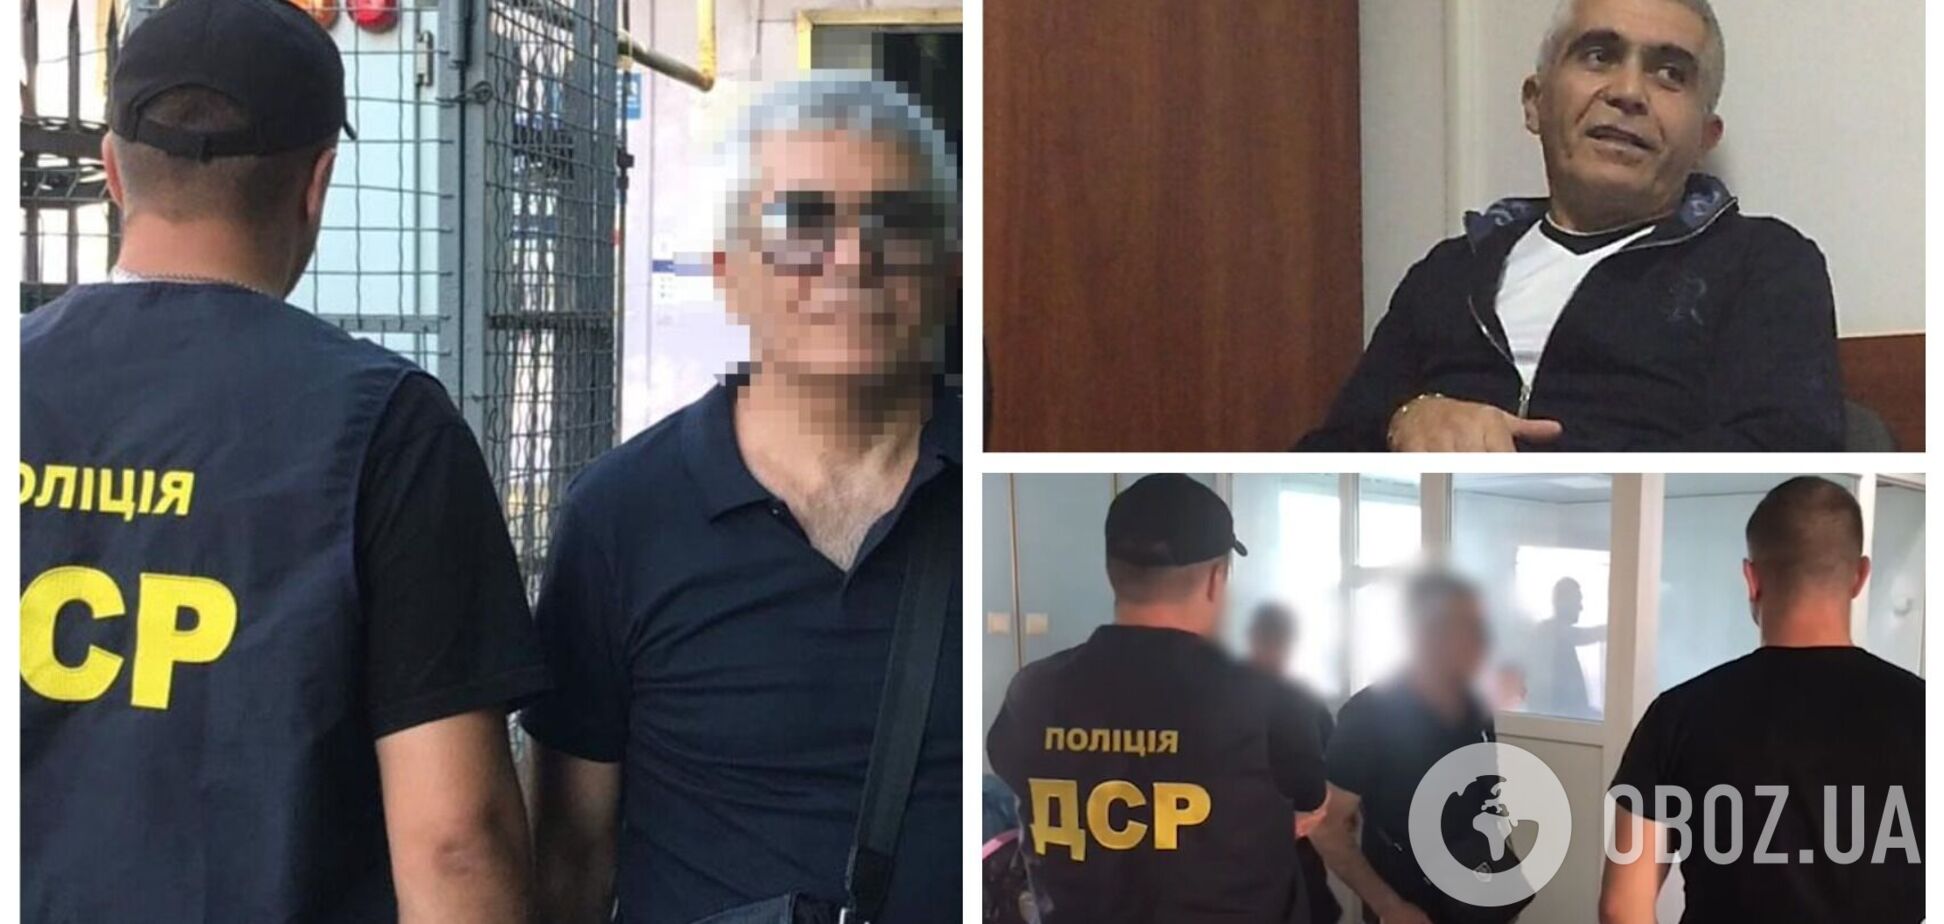 З України видворили кримінального авторитета на прізвисько 'Дід' із санкційного списку РНБО. Відео